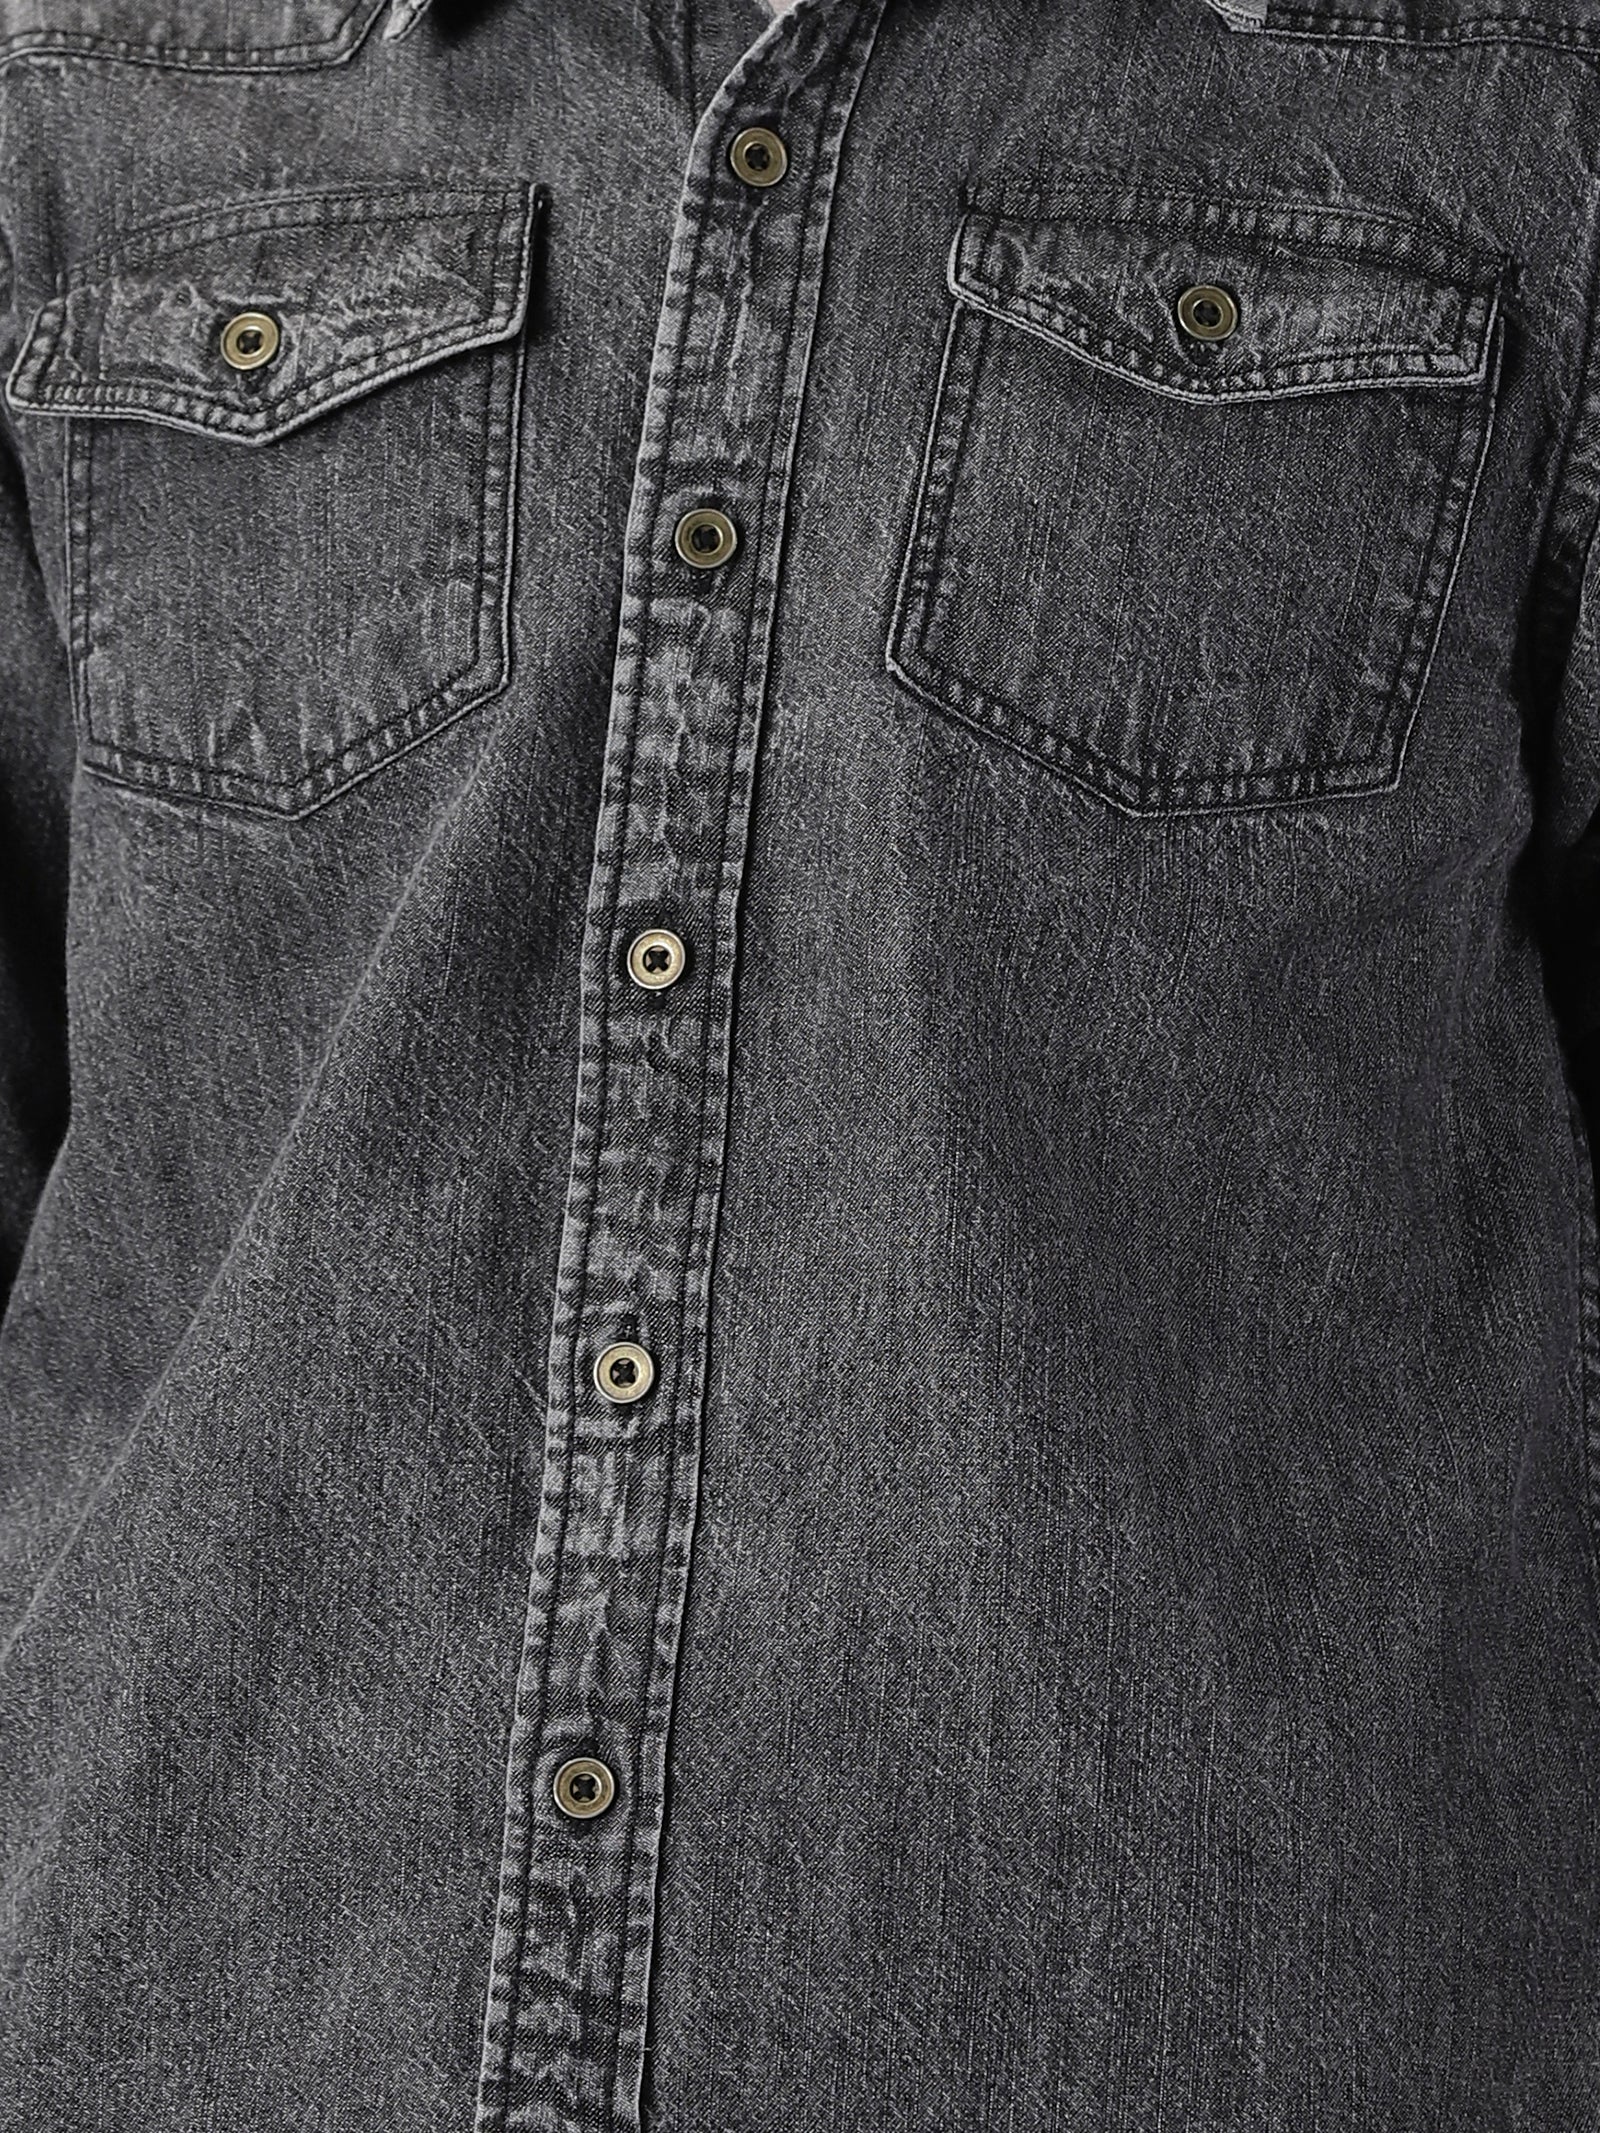 Distressed Men Denim Shirt CW114357 - cwmalls - Textile & Apparel, Apparel,  Men's Clothing, Shirts - ArtPal